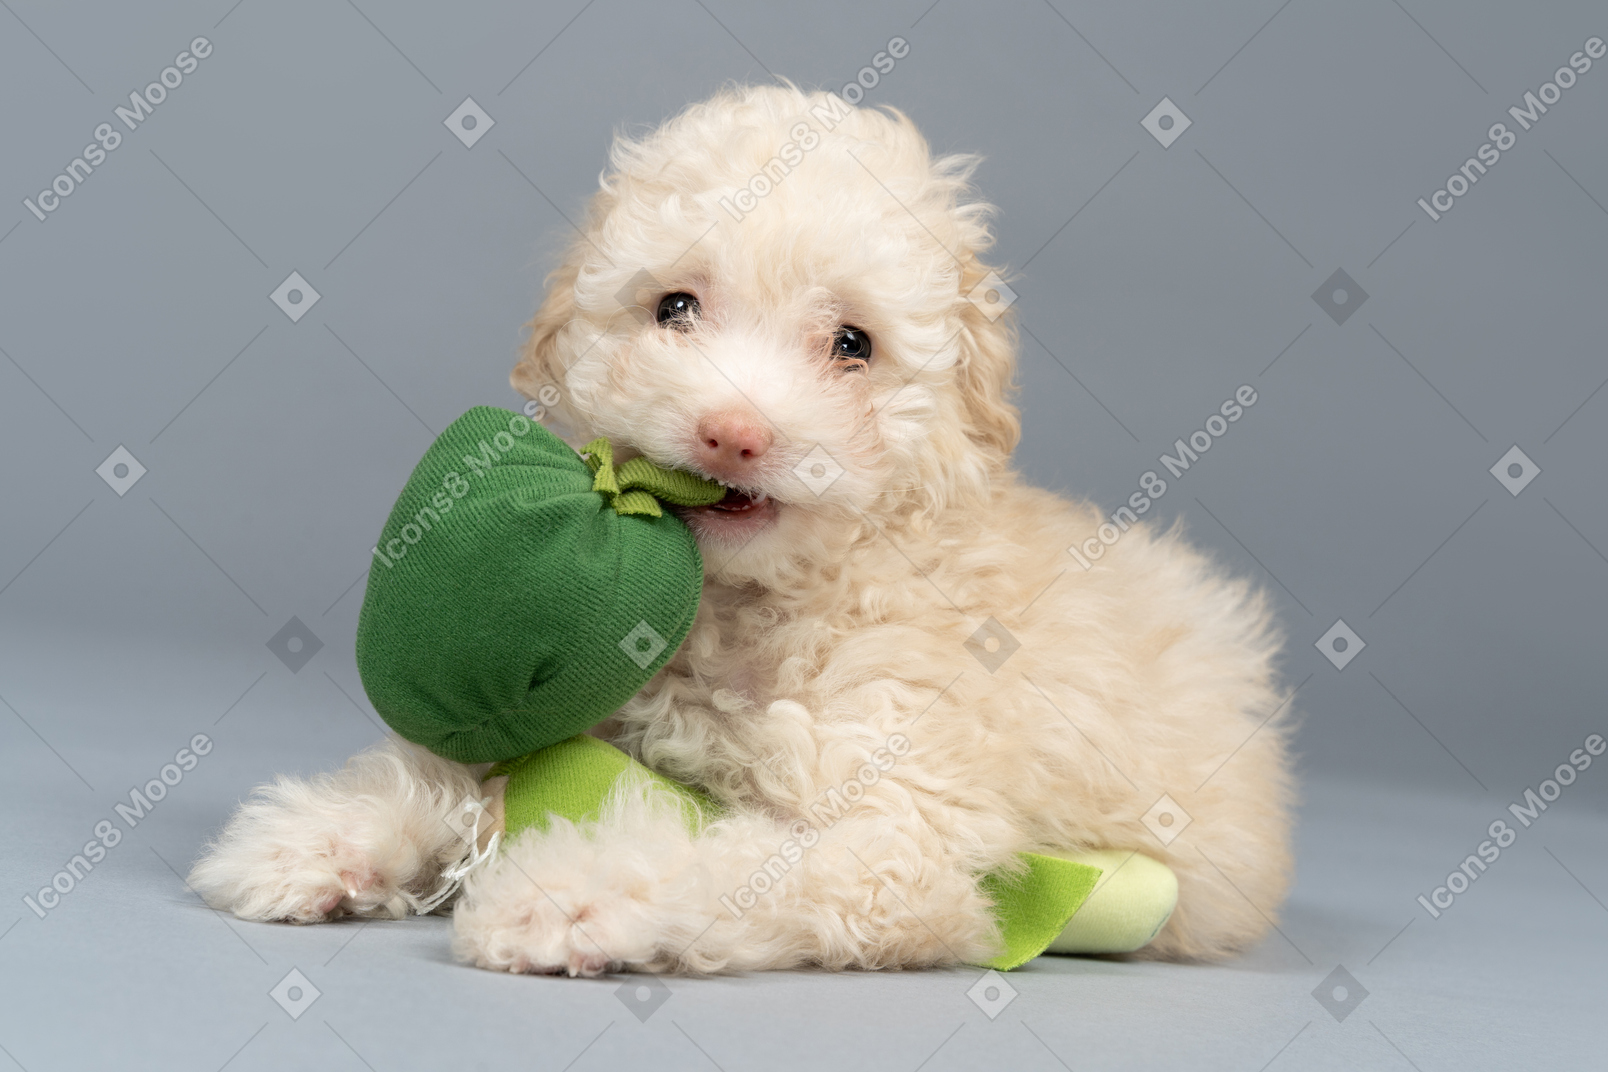 Poodle branco bonito, segurando um brinquedo na boca